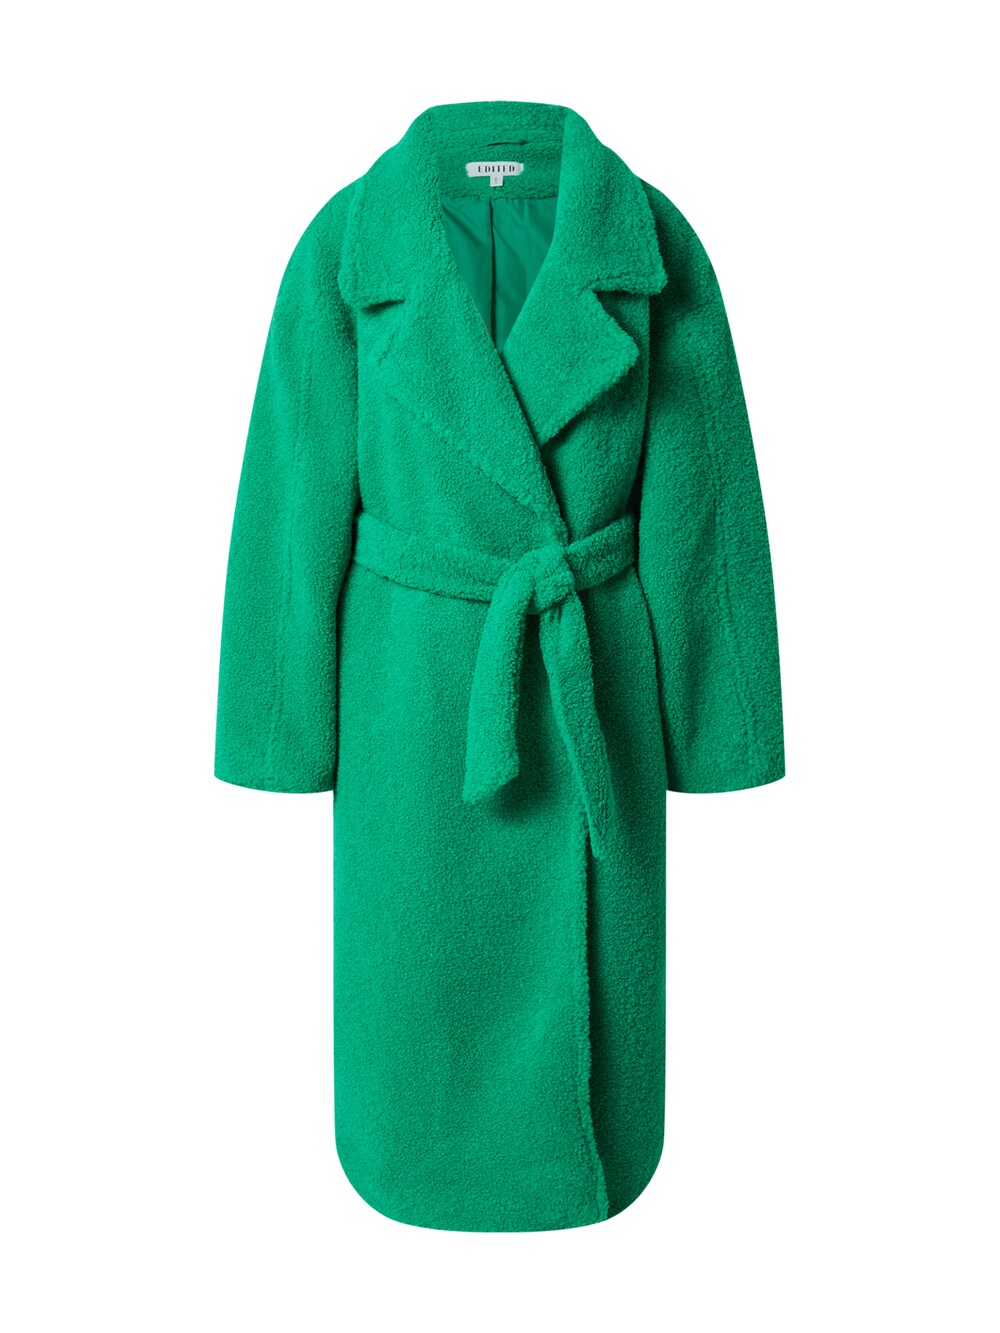 Межсезонное пальто EDITED Imelda, зеленый межсезонное пальто edited uli зеленый